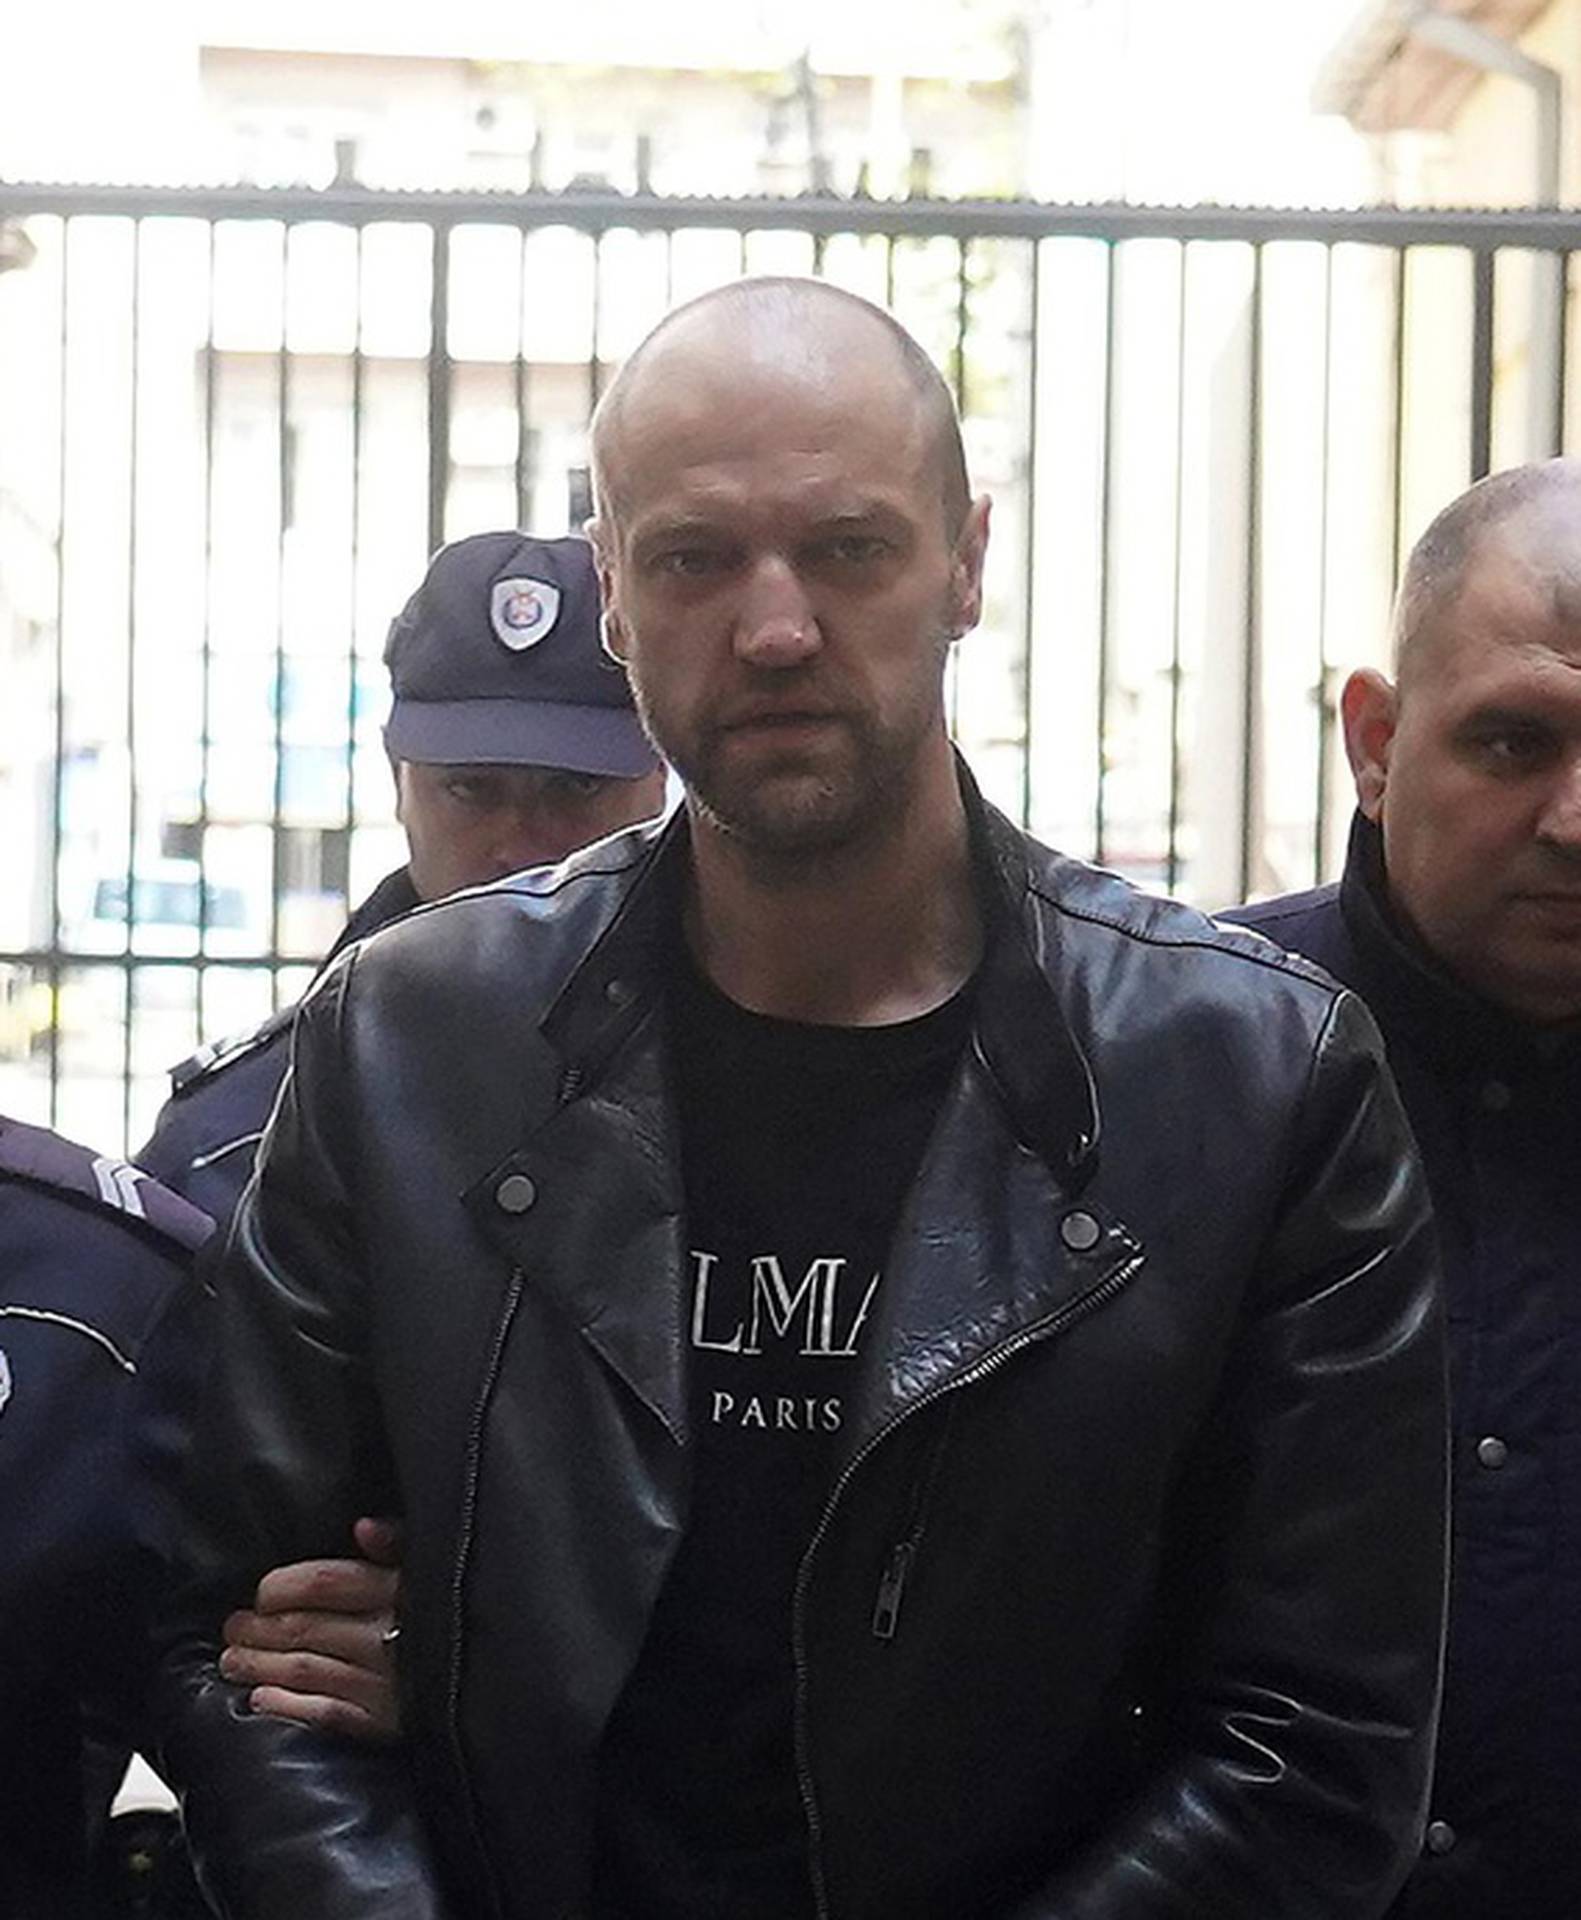 Uhićen srpski modni dizajner koji je mladića držao u smočnici